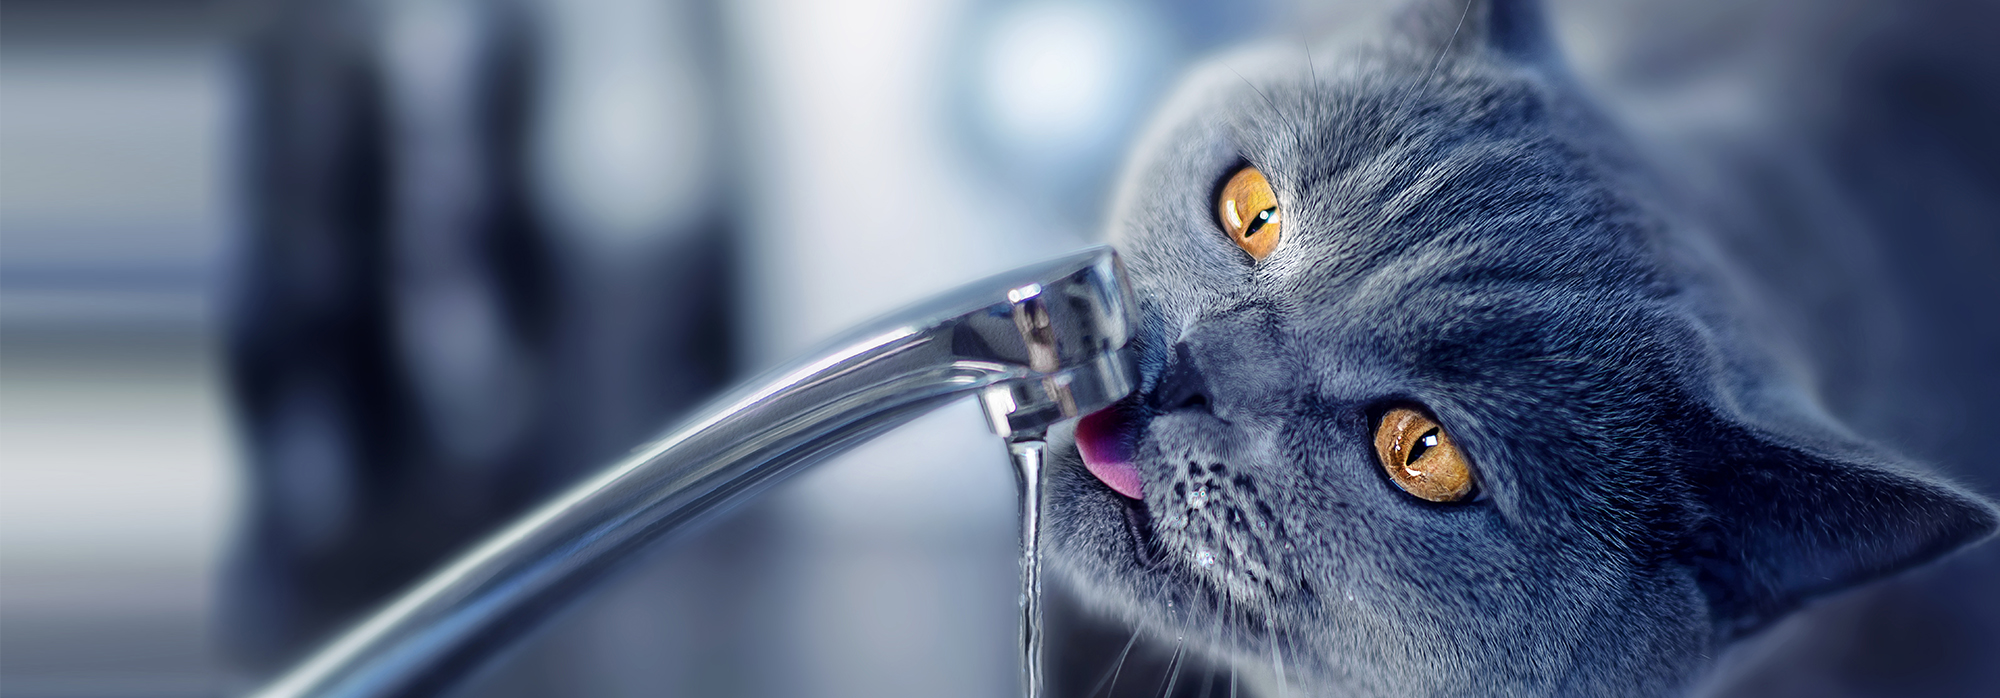 Как заставить кота пить воду? — Интернет-магазин 7745.by